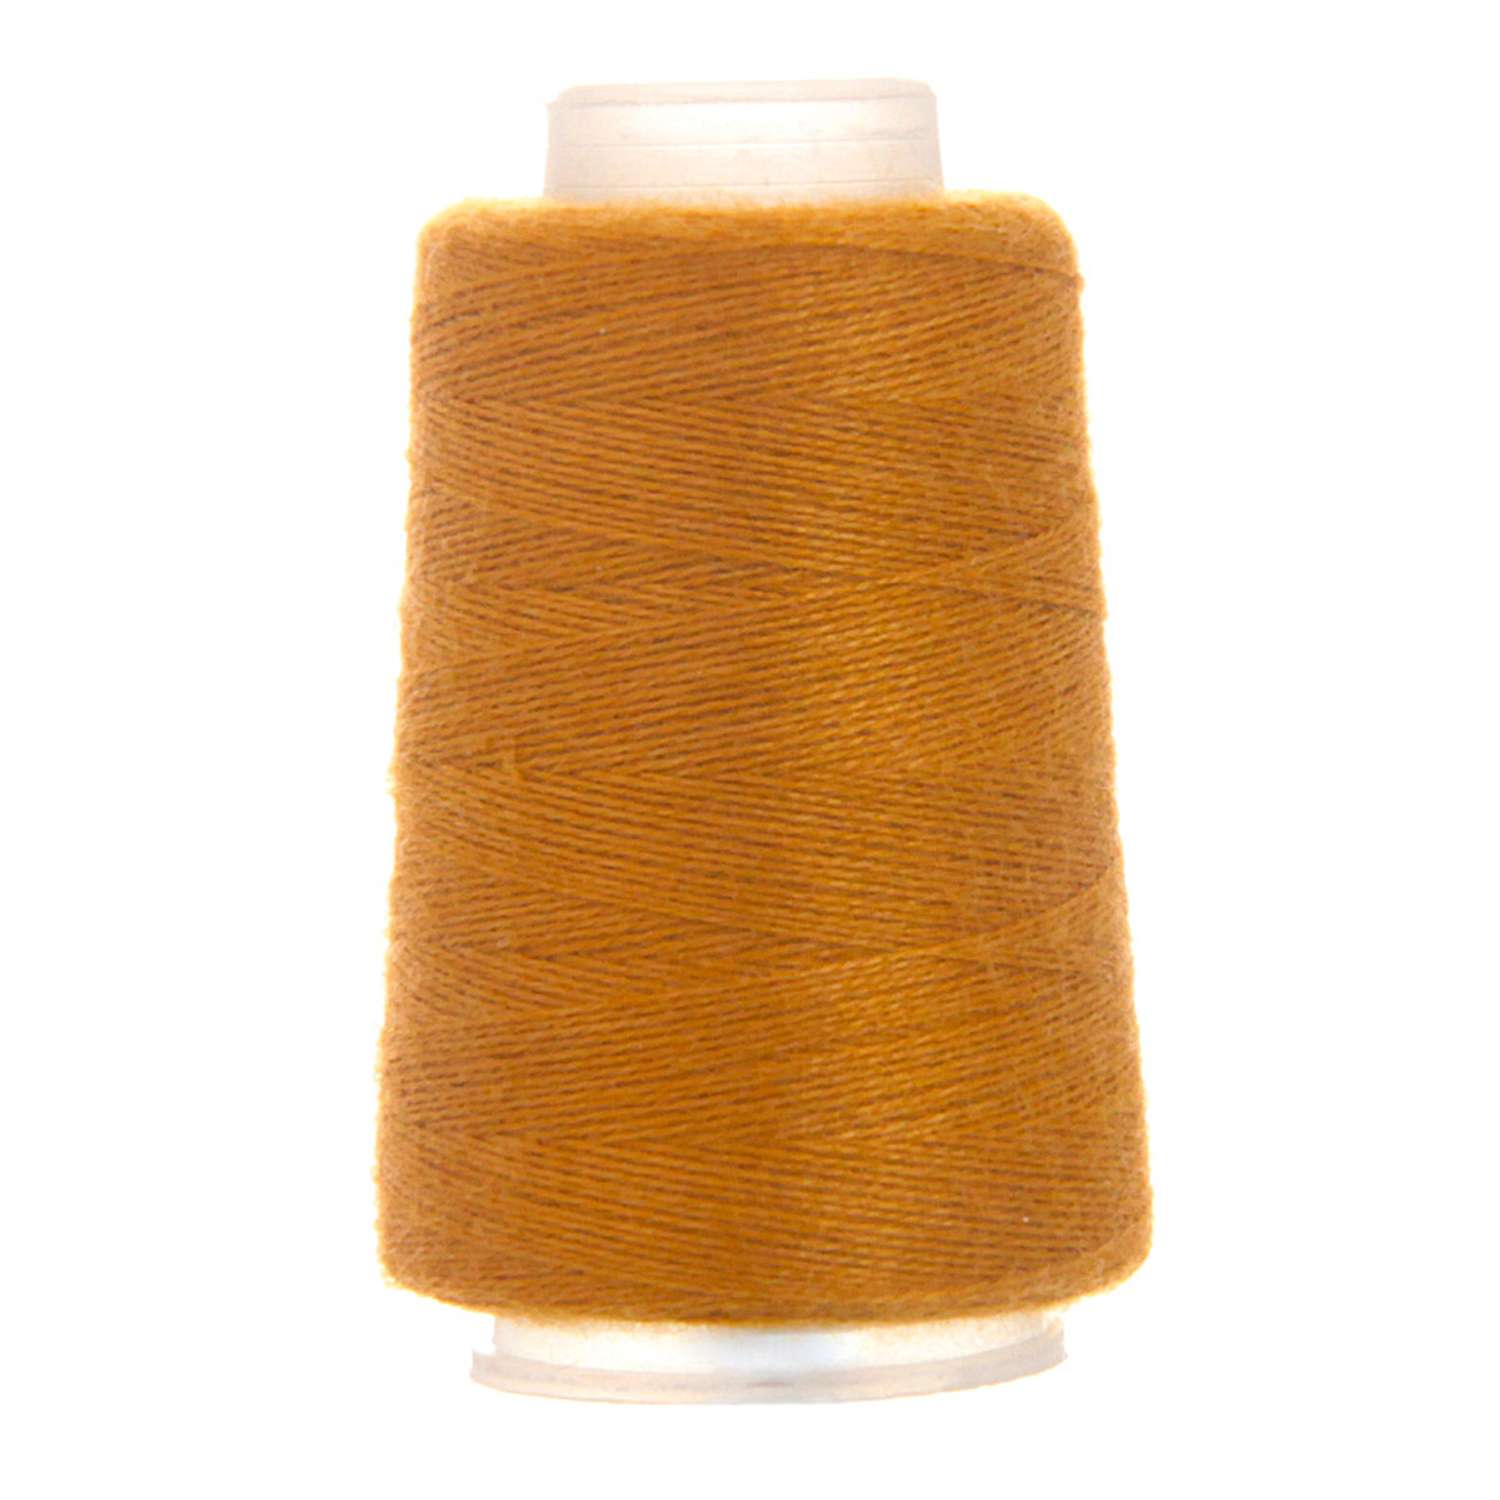 Пряжа Astra Premium Пух норки Mink yarn воздушная с ворсом 50 г 290 м 036 горчичный 1 моток - фото 7